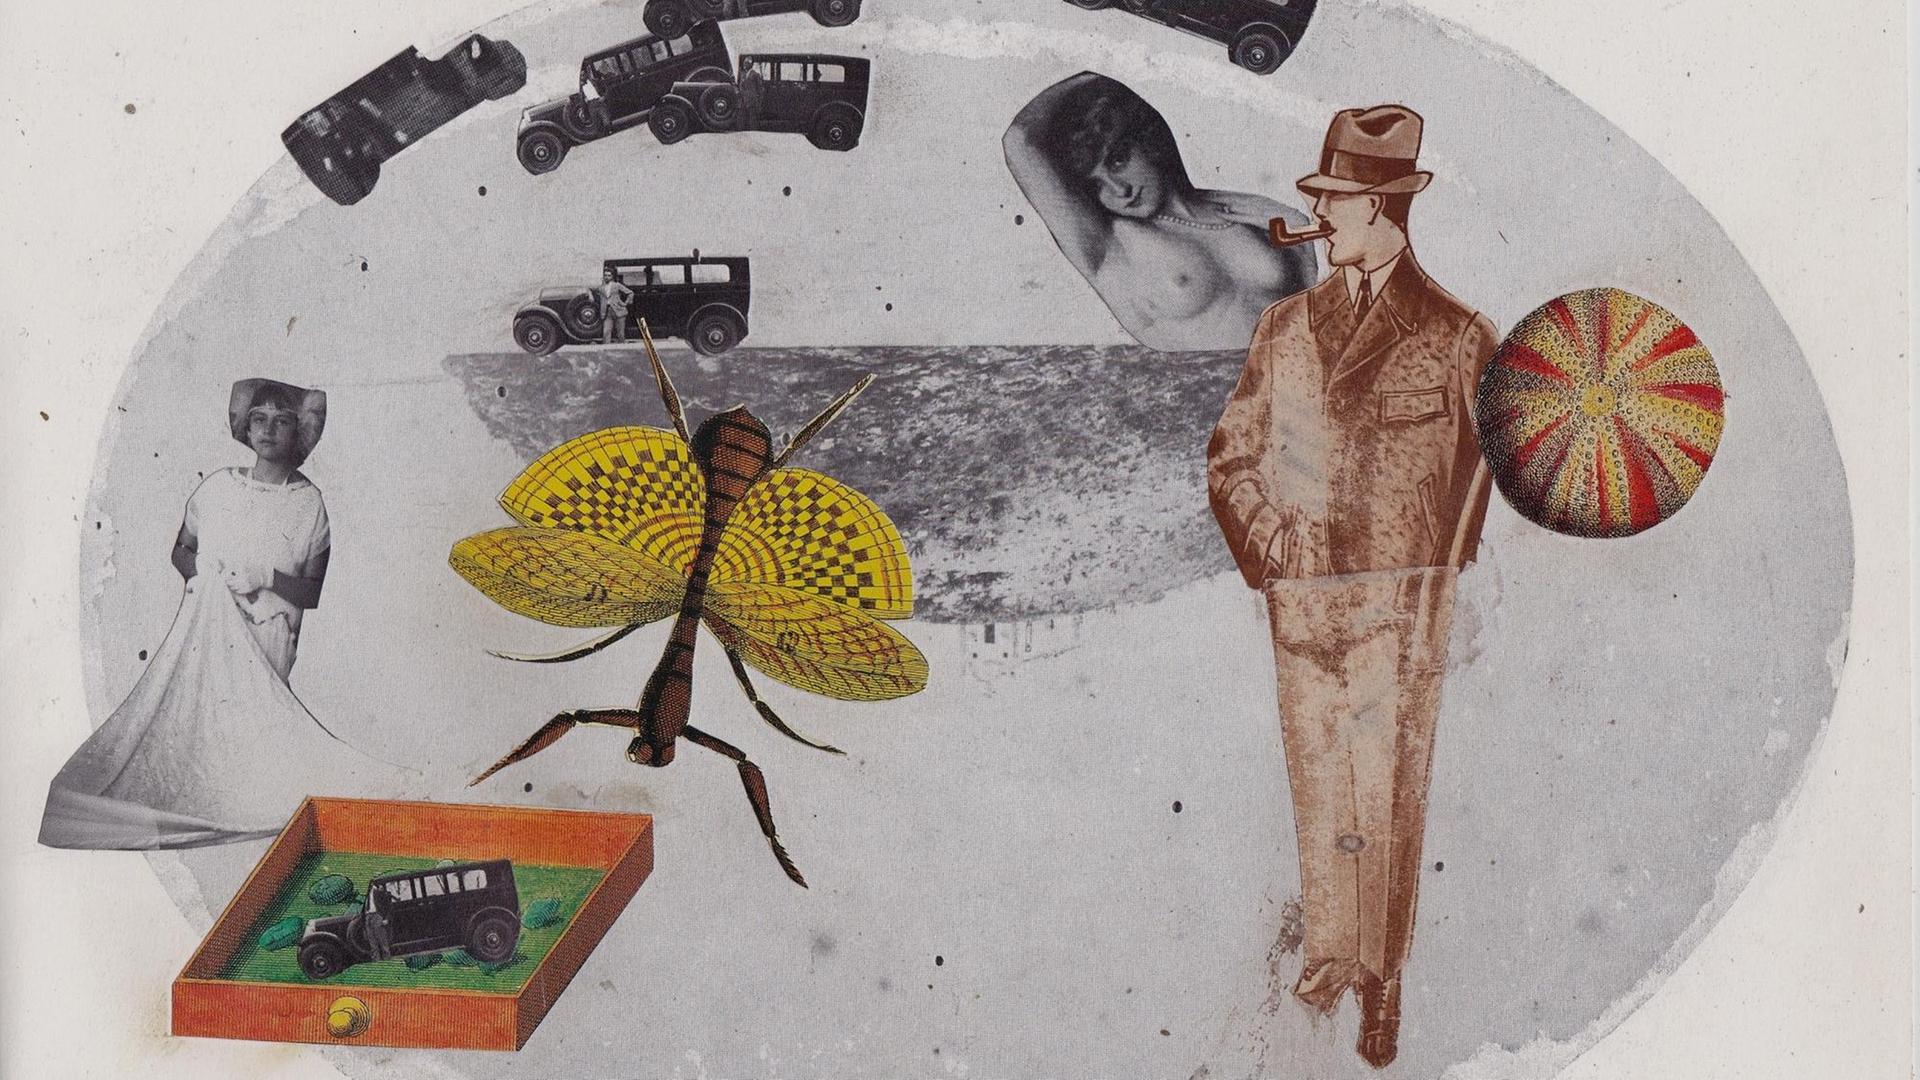 Eine Illustration des Fliegenforschers, mit zwei Damen, einer Fliege, einem Ball und mehreren kleinen Autos.